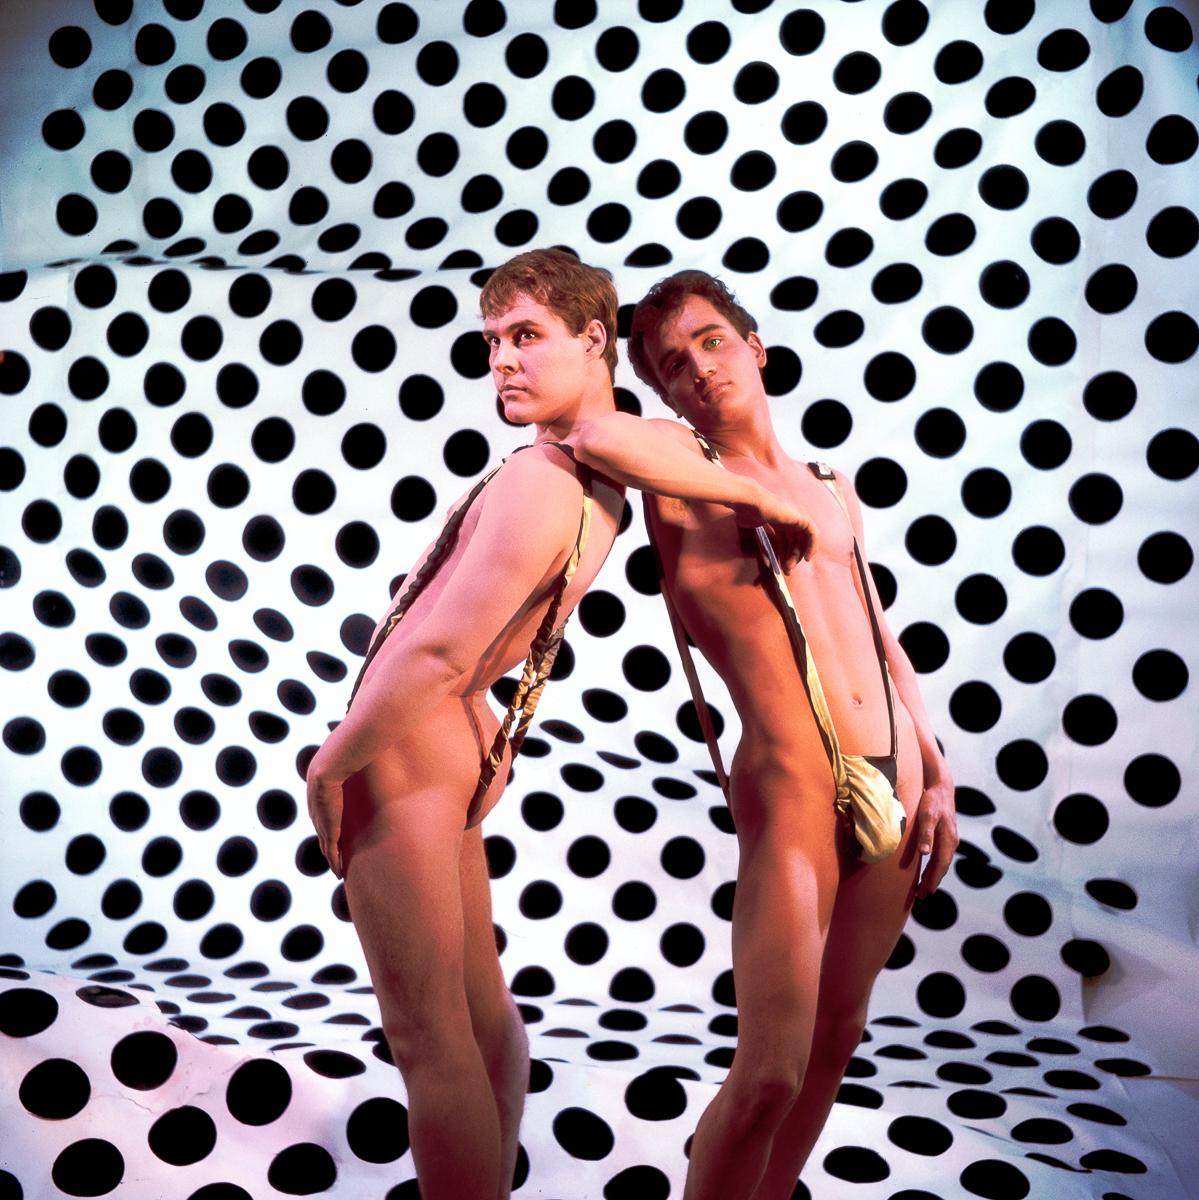 James Bidgood Nude Photograph - Op art